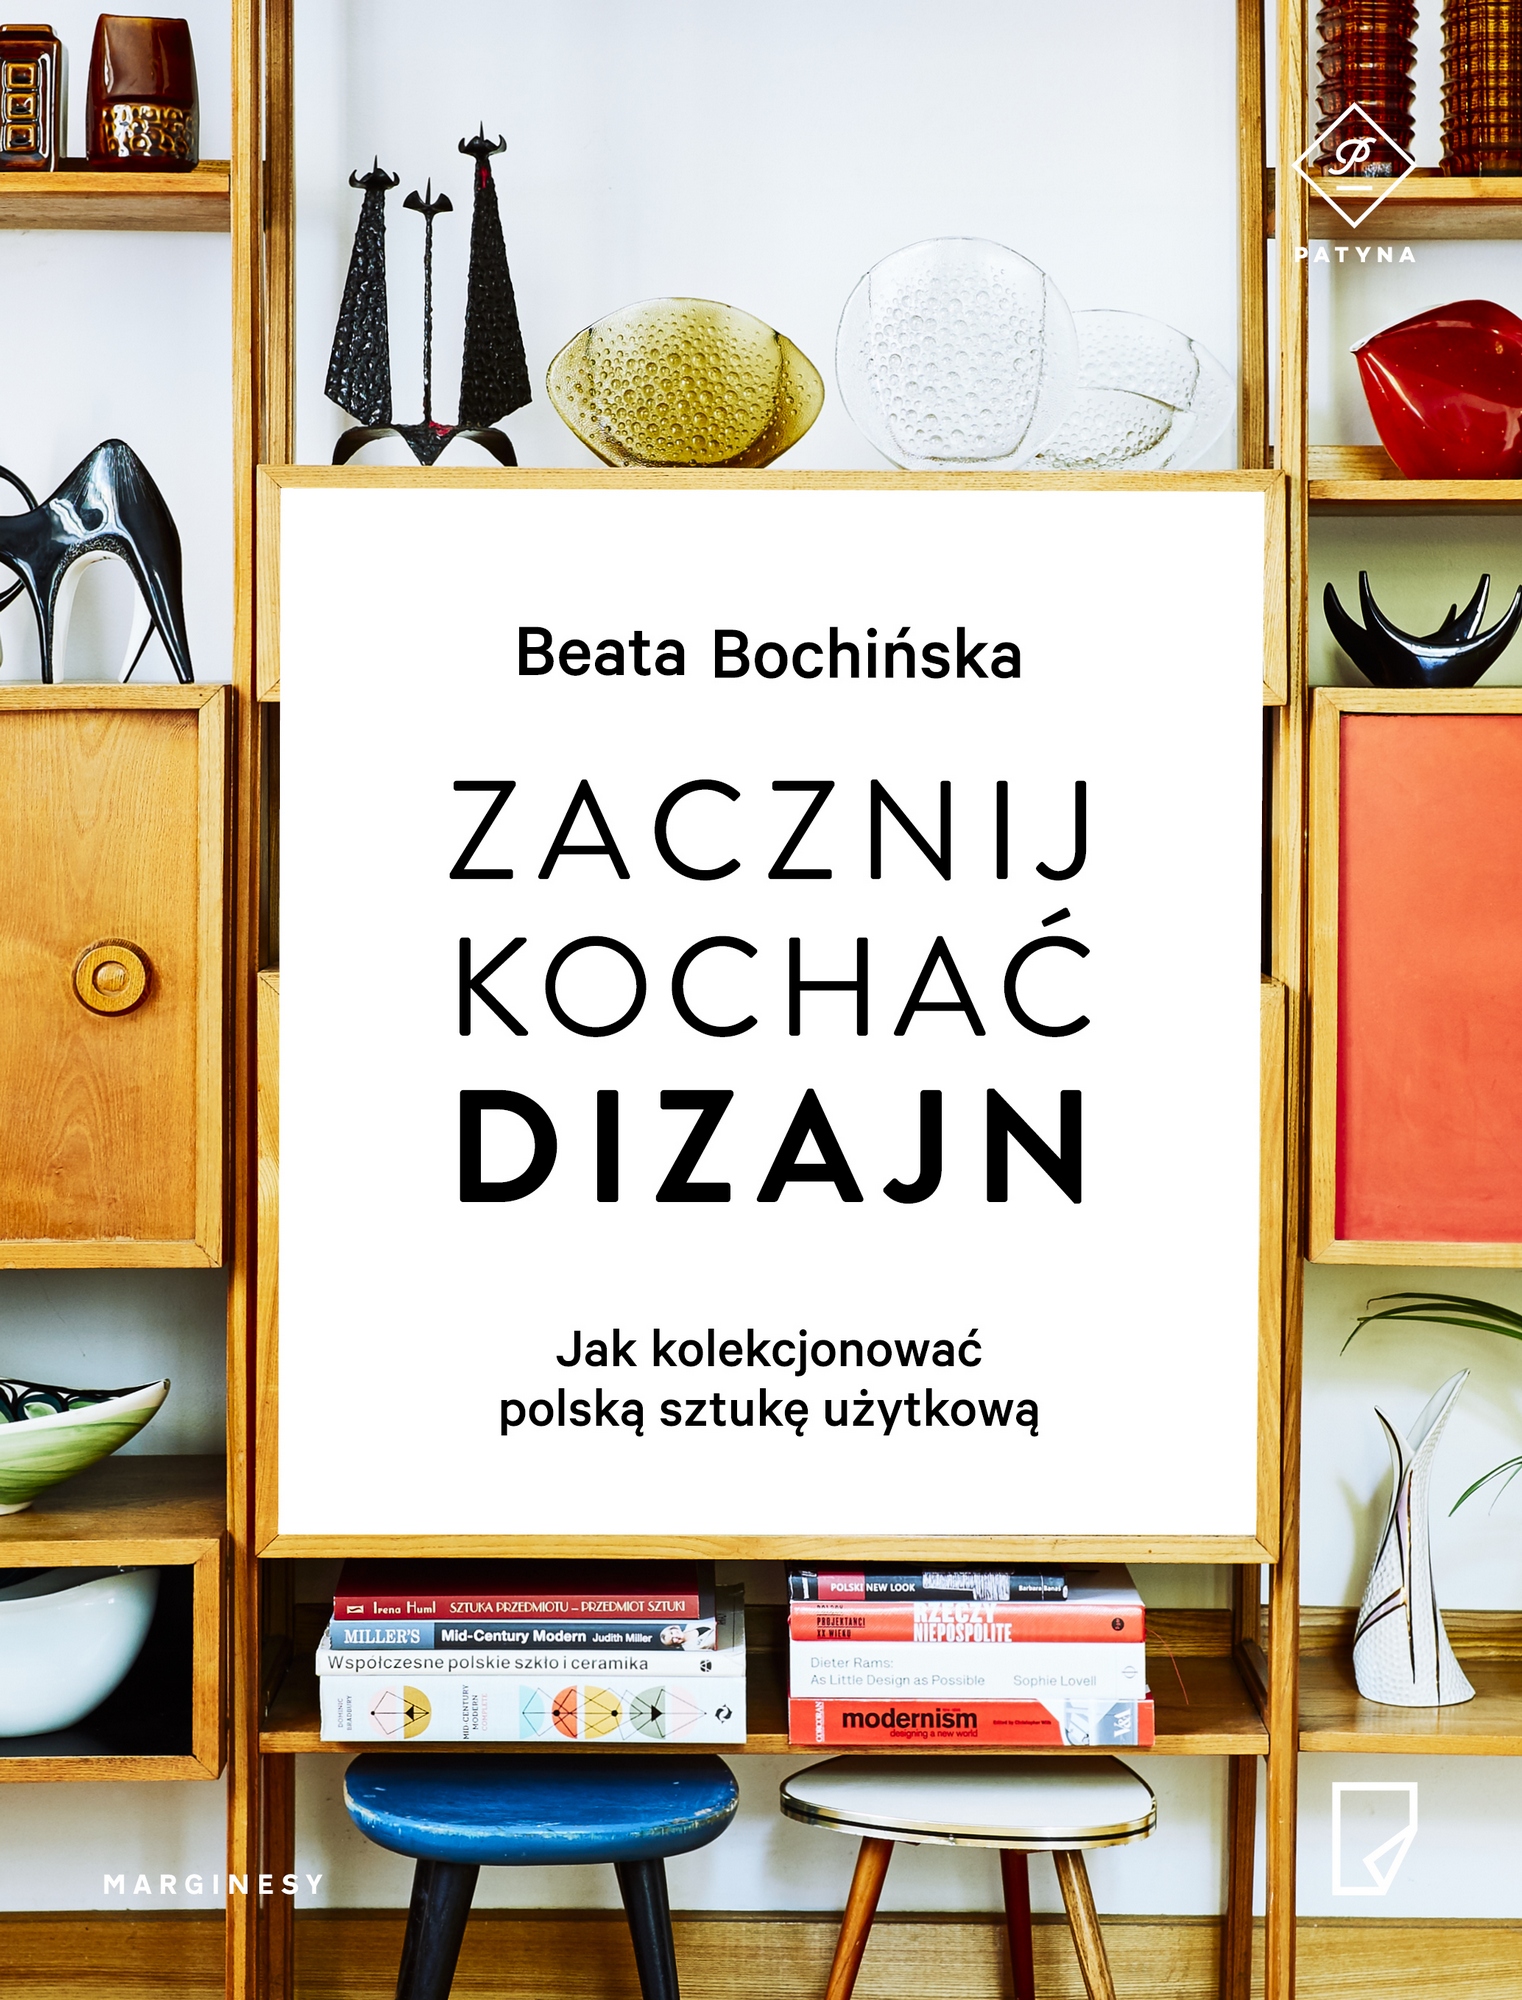 Beata Bochińska, „Zacznij kochać dizajn. Jak kolekcjonować polską sztukę użytkową”, okładka (źródło: materiały prasowe wydawcy)